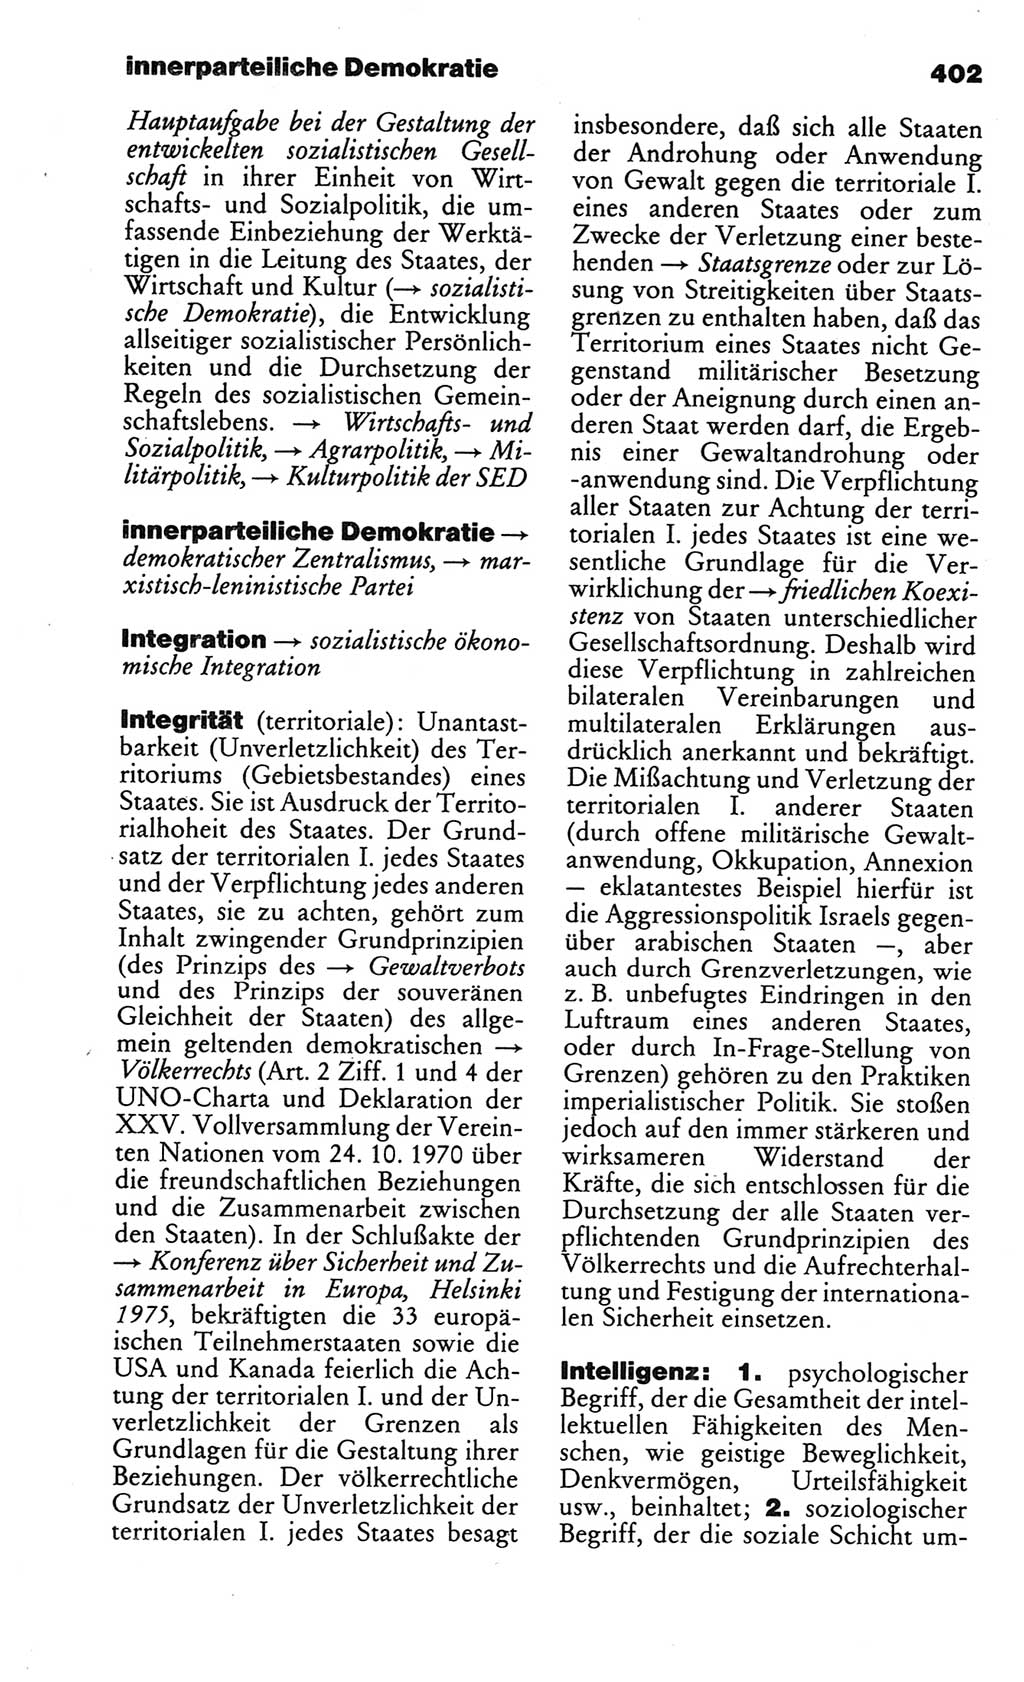 Kleines politisches Wörterbuch [Deutsche Demokratische Republik (DDR)] 1986, Seite 402 (Kl. pol. Wb. DDR 1986, S. 402)